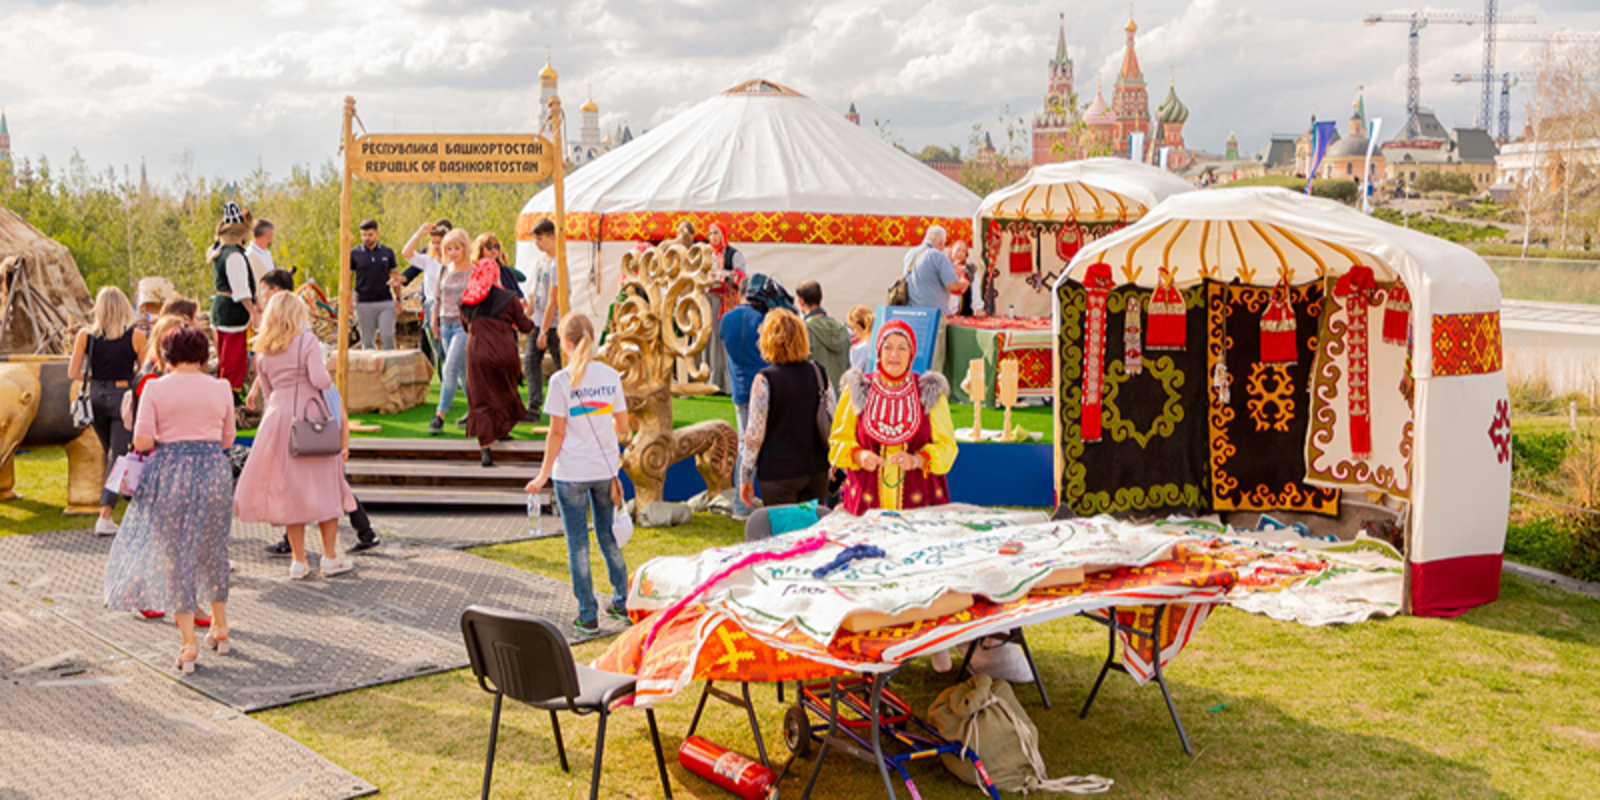 В Москве на фестивале Русского географического общества будет представлена башкирская культура